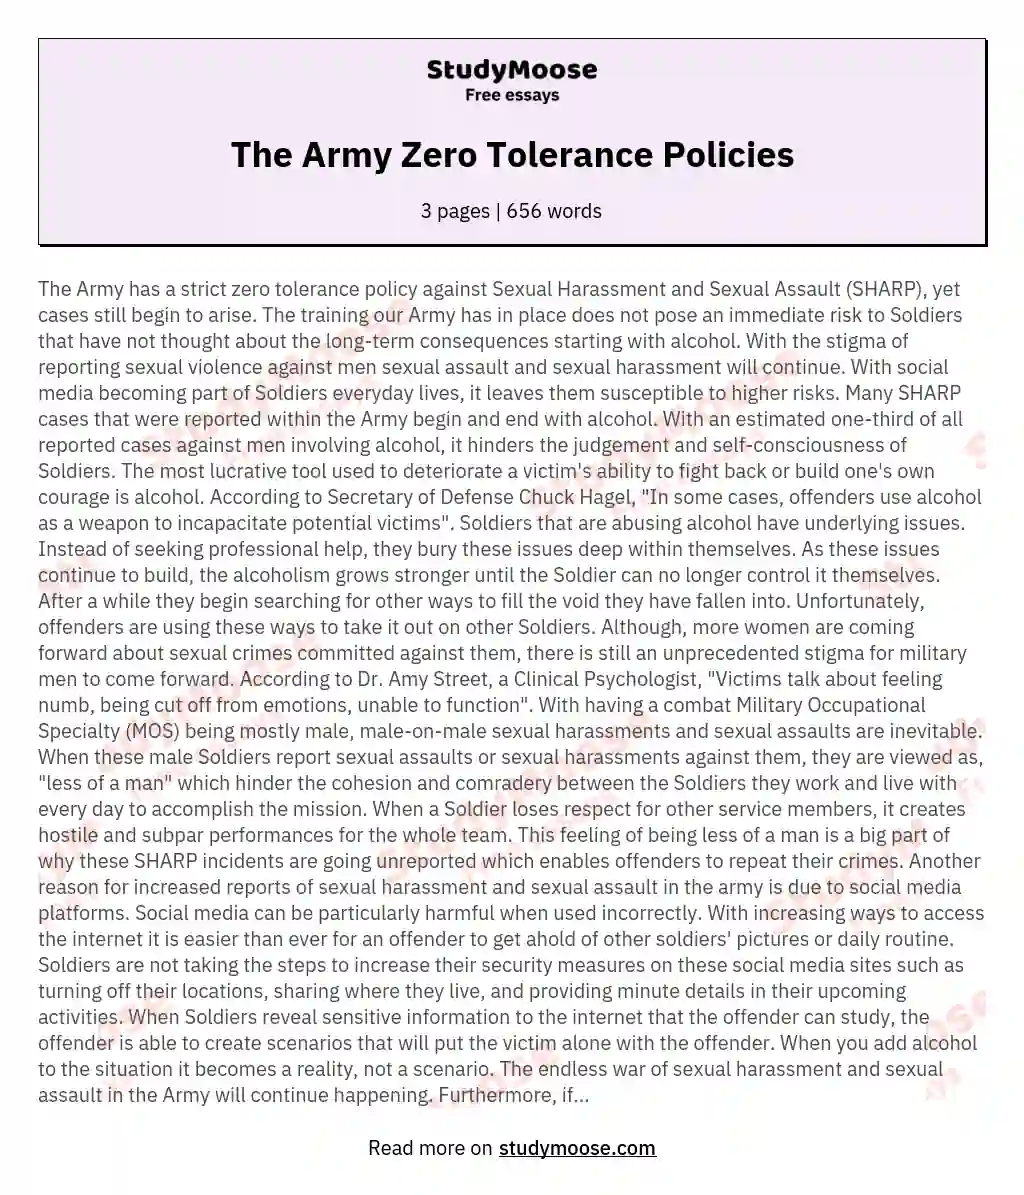 The Army Zero Tolerance Policies essay